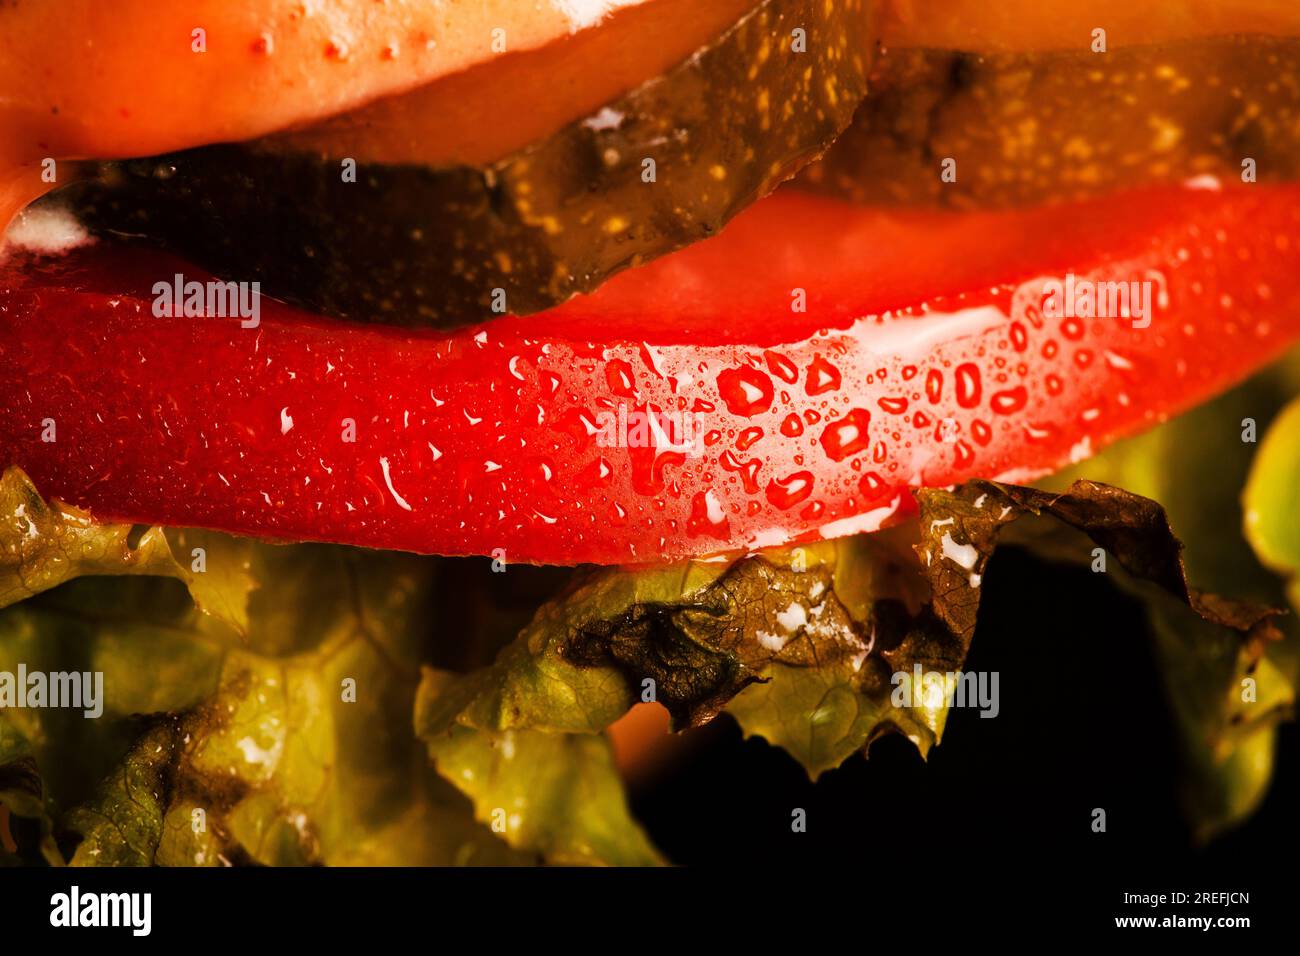 Gros plan sur des gouttes d'eau de hamburger abstingrer sur une tomate rouge Banque D'Images